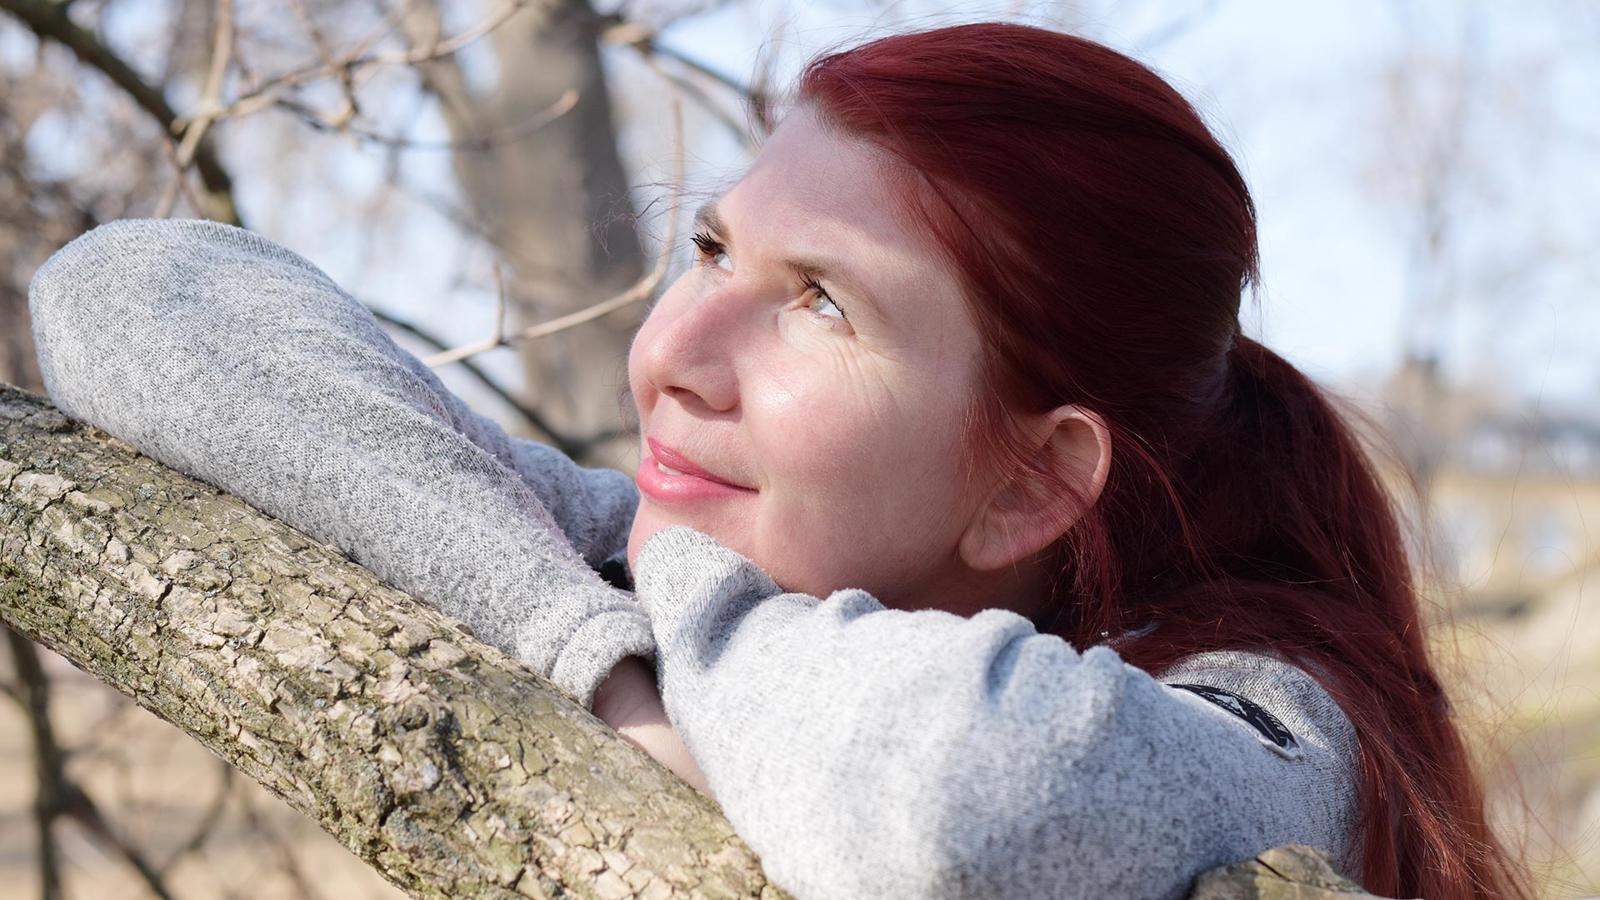 Victorita Necula står i solen vid ett träd med blicken riktad upp i himlen